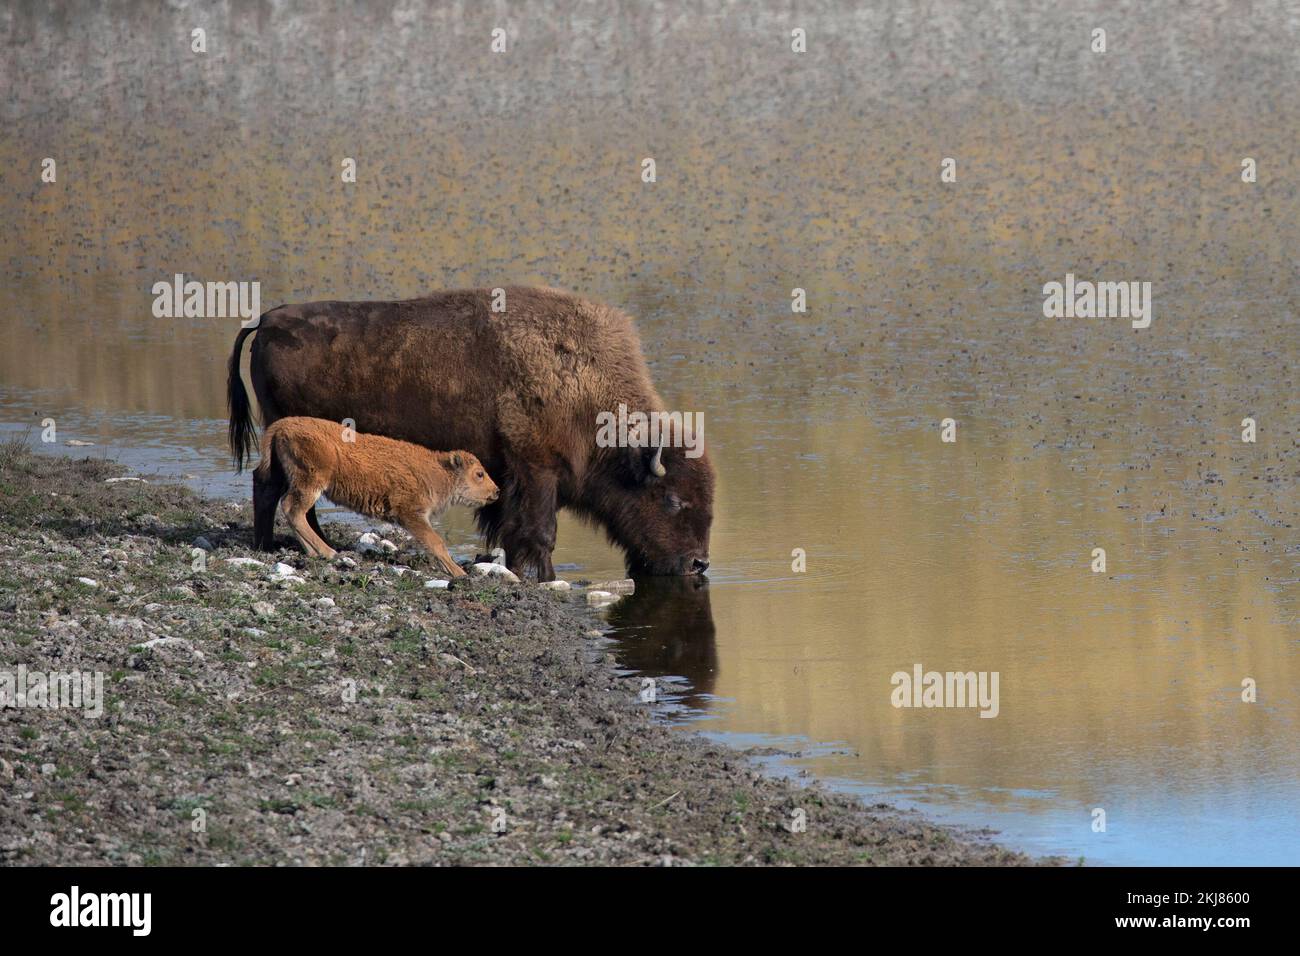 Mère de bison des plaines avec eau potable de veau provenant d'un lac kettle en terrain glacié, parc national des Lacs-Waterton, Canada (Bison bison) Banque D'Images